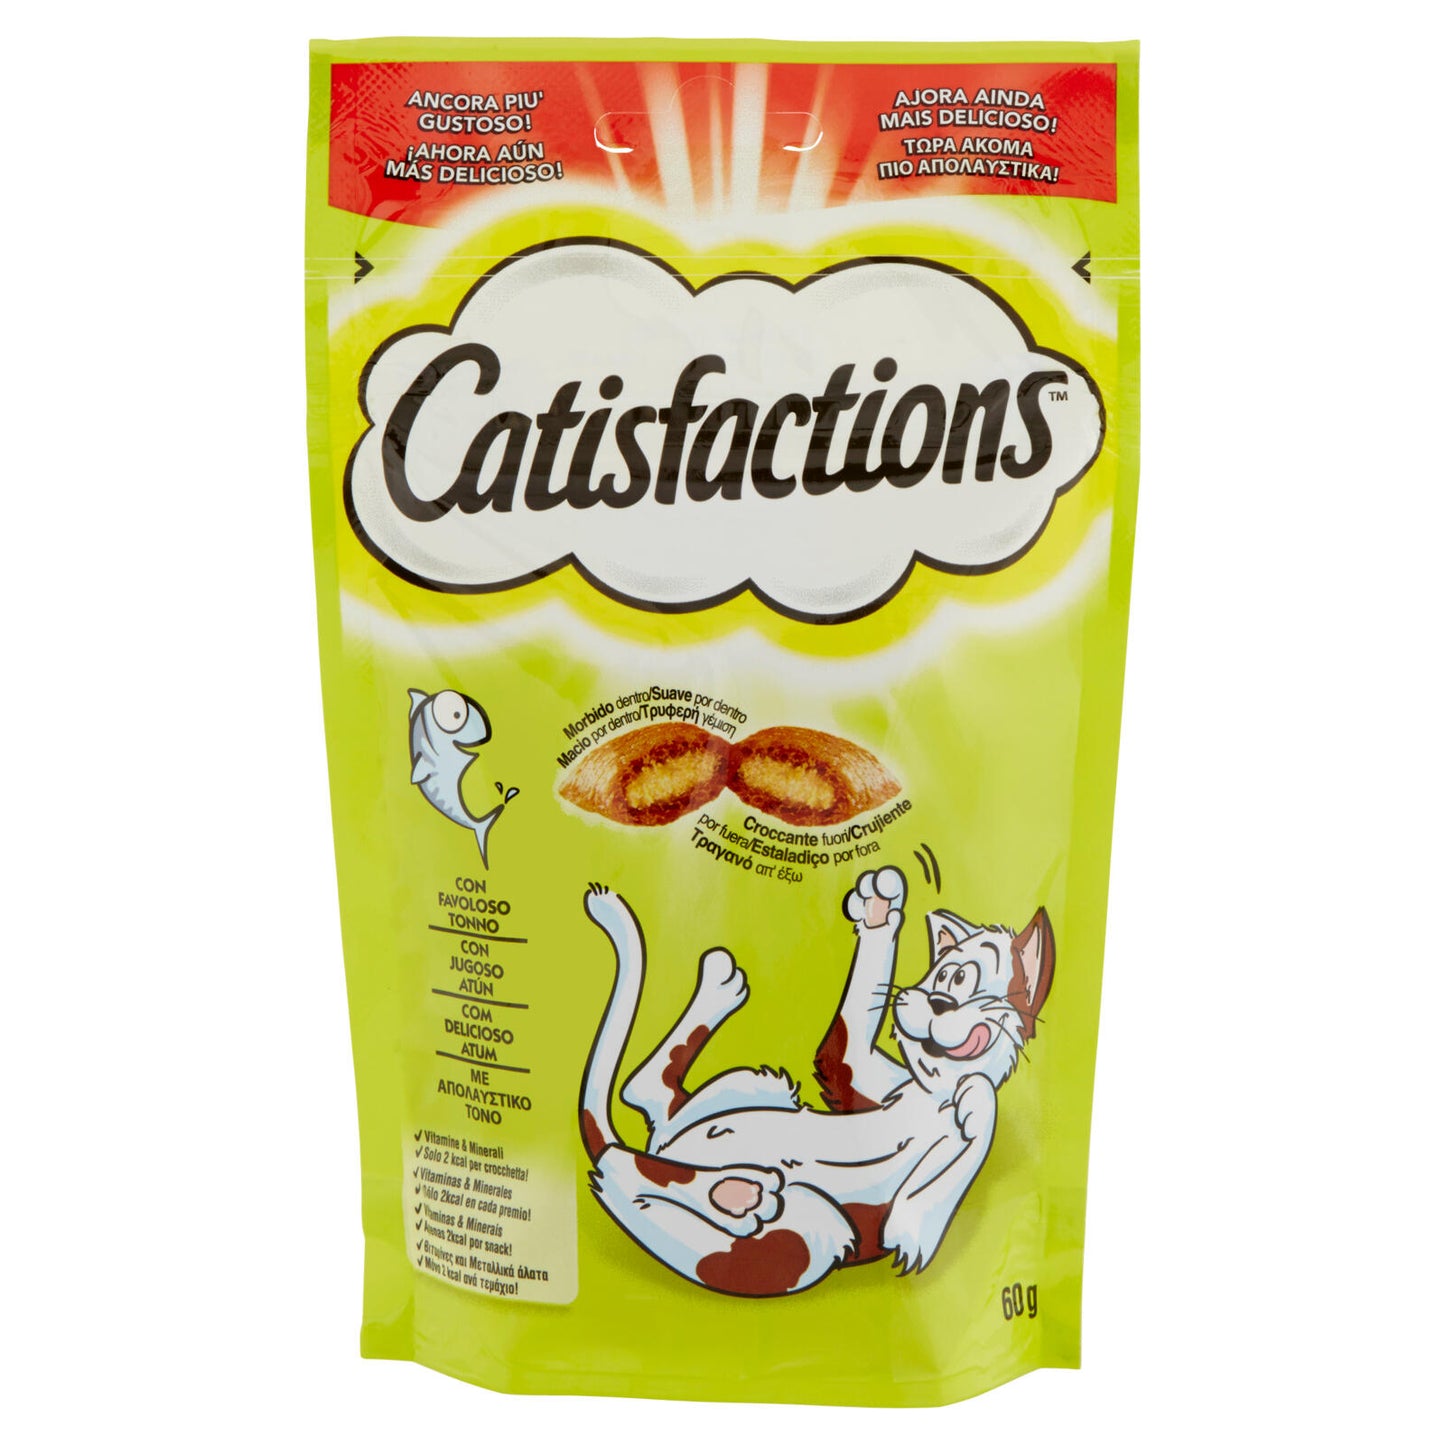 Catisfactions Snack Gatto con Favoloso Tonno 60 g